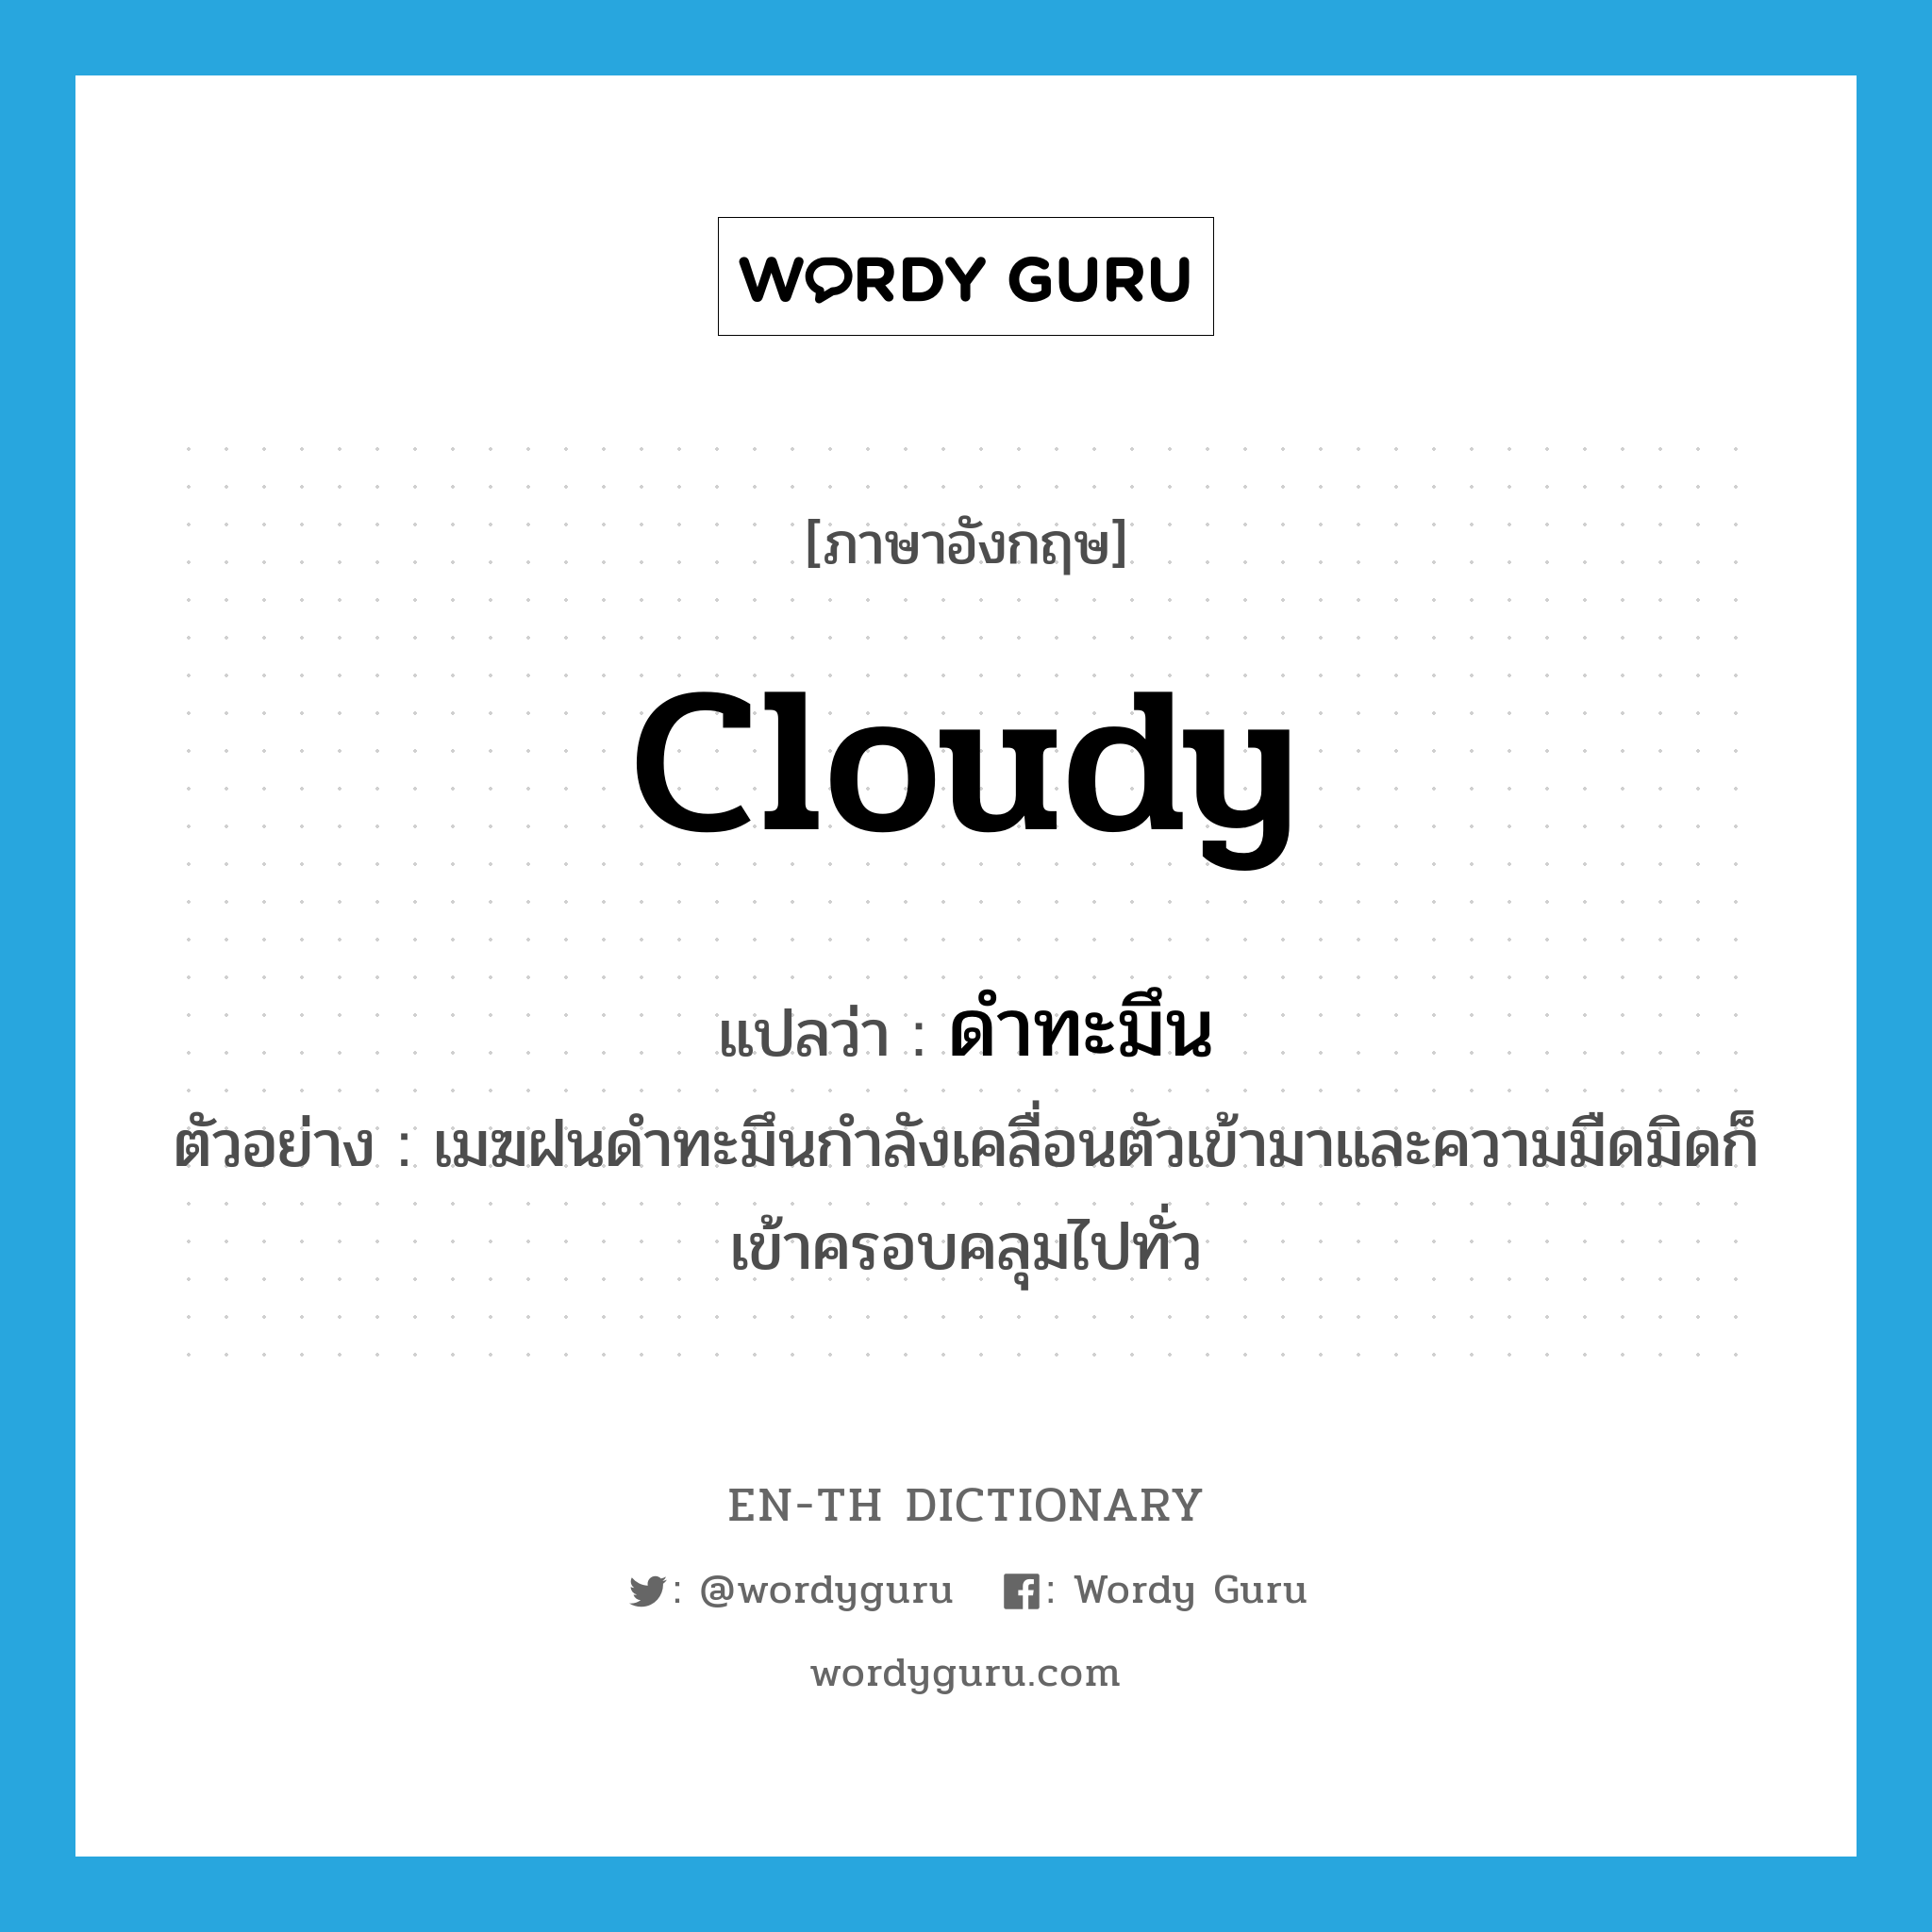 cloudy แปลว่า?, คำศัพท์ภาษาอังกฤษ cloudy แปลว่า ดำทะมึน ประเภท ADJ ตัวอย่าง เมฆฝนดำทะมึนกำลังเคลื่อนตัวเข้ามาและความมืดมิดก็เข้าครอบคลุมไปทั่ว หมวด ADJ